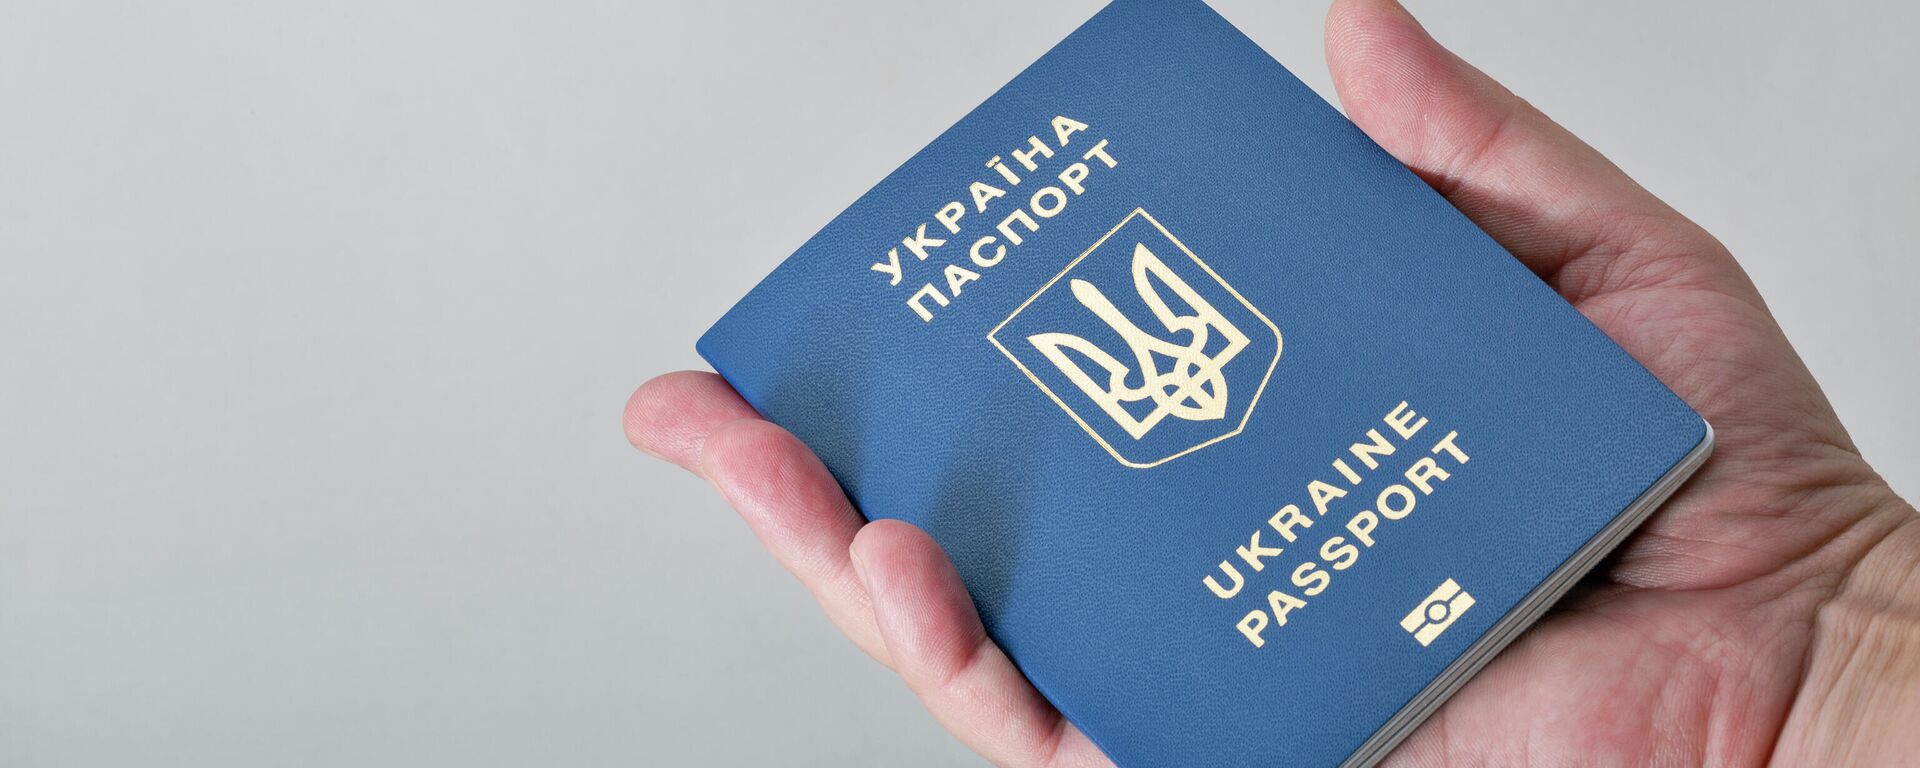 Украинский паспорт в руке, архивное фото - Sputnik Литва, 1920, 25.05.2022